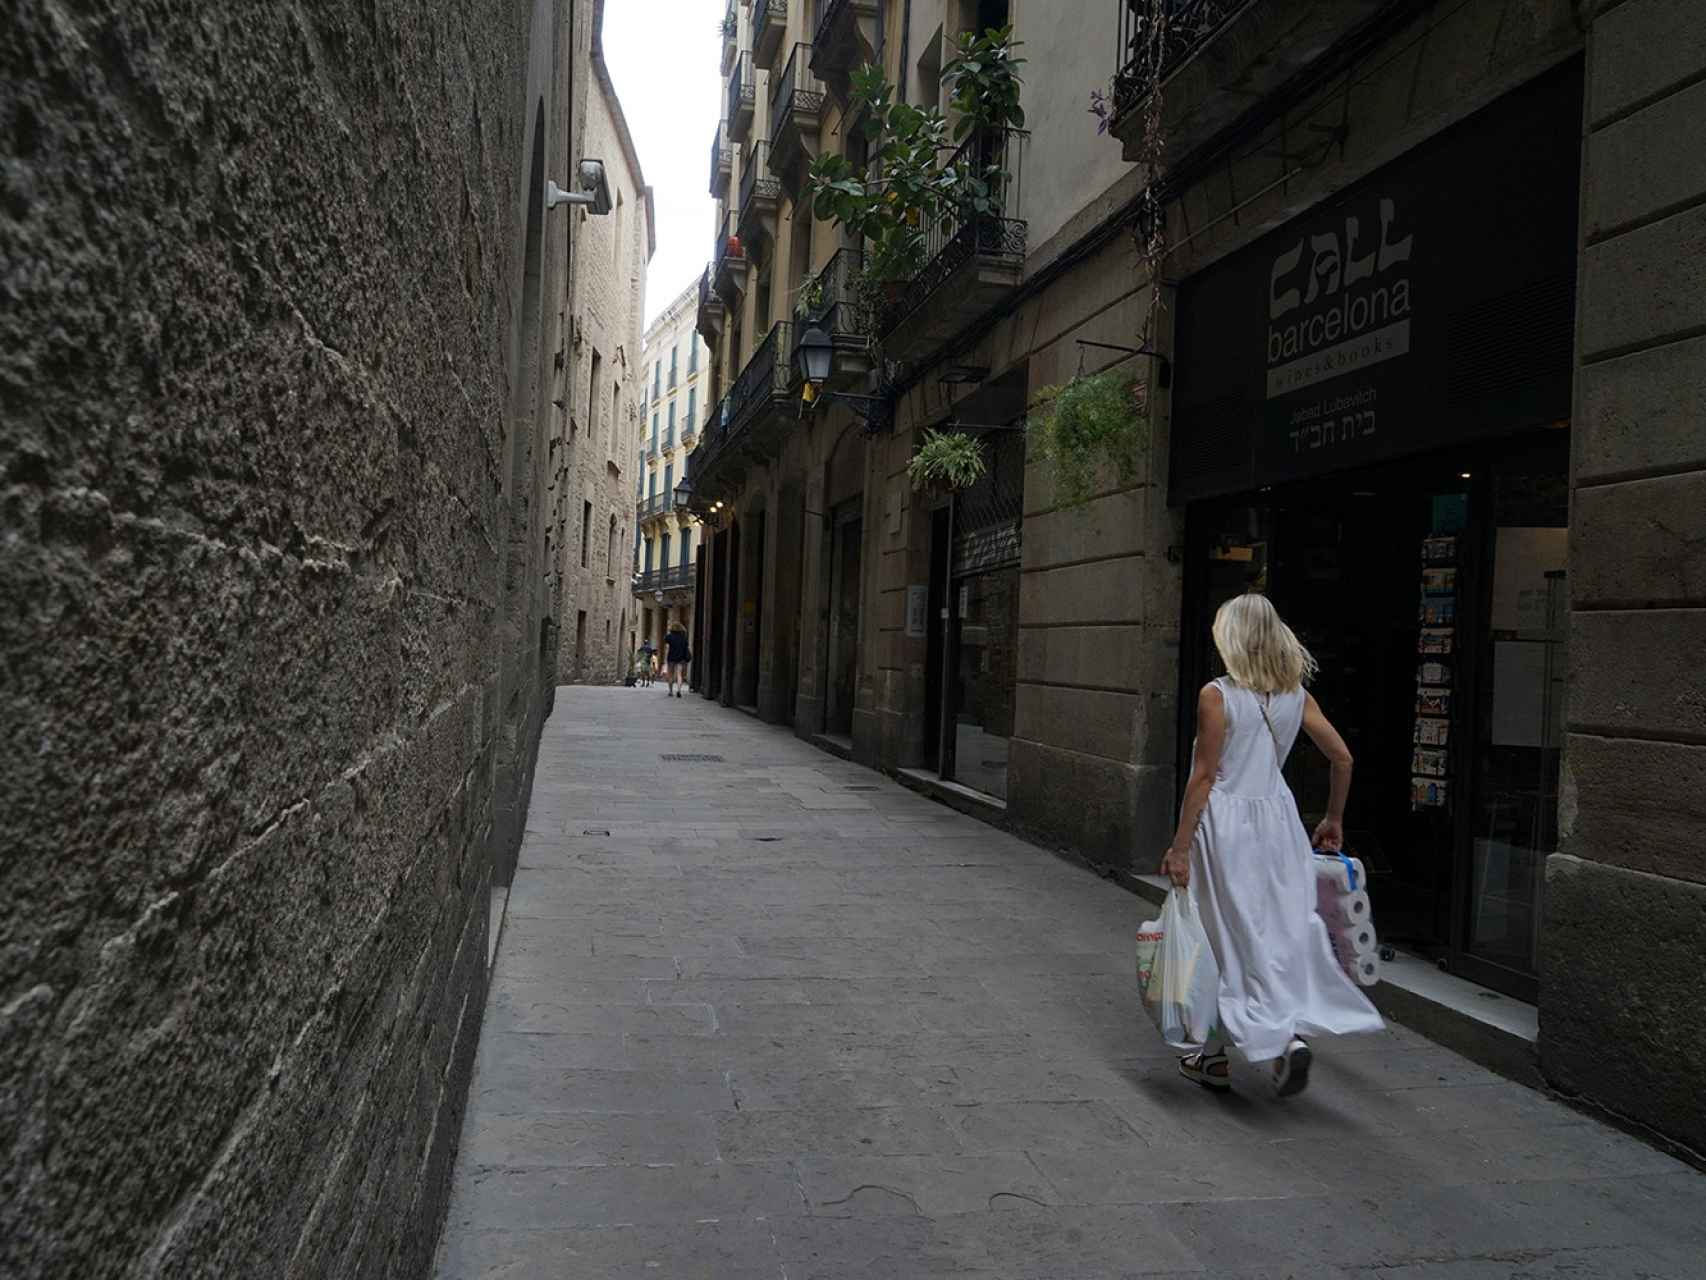 En la calle Sant Honorat, se encuentra uno de los pocos comercios judíos de Barcelona